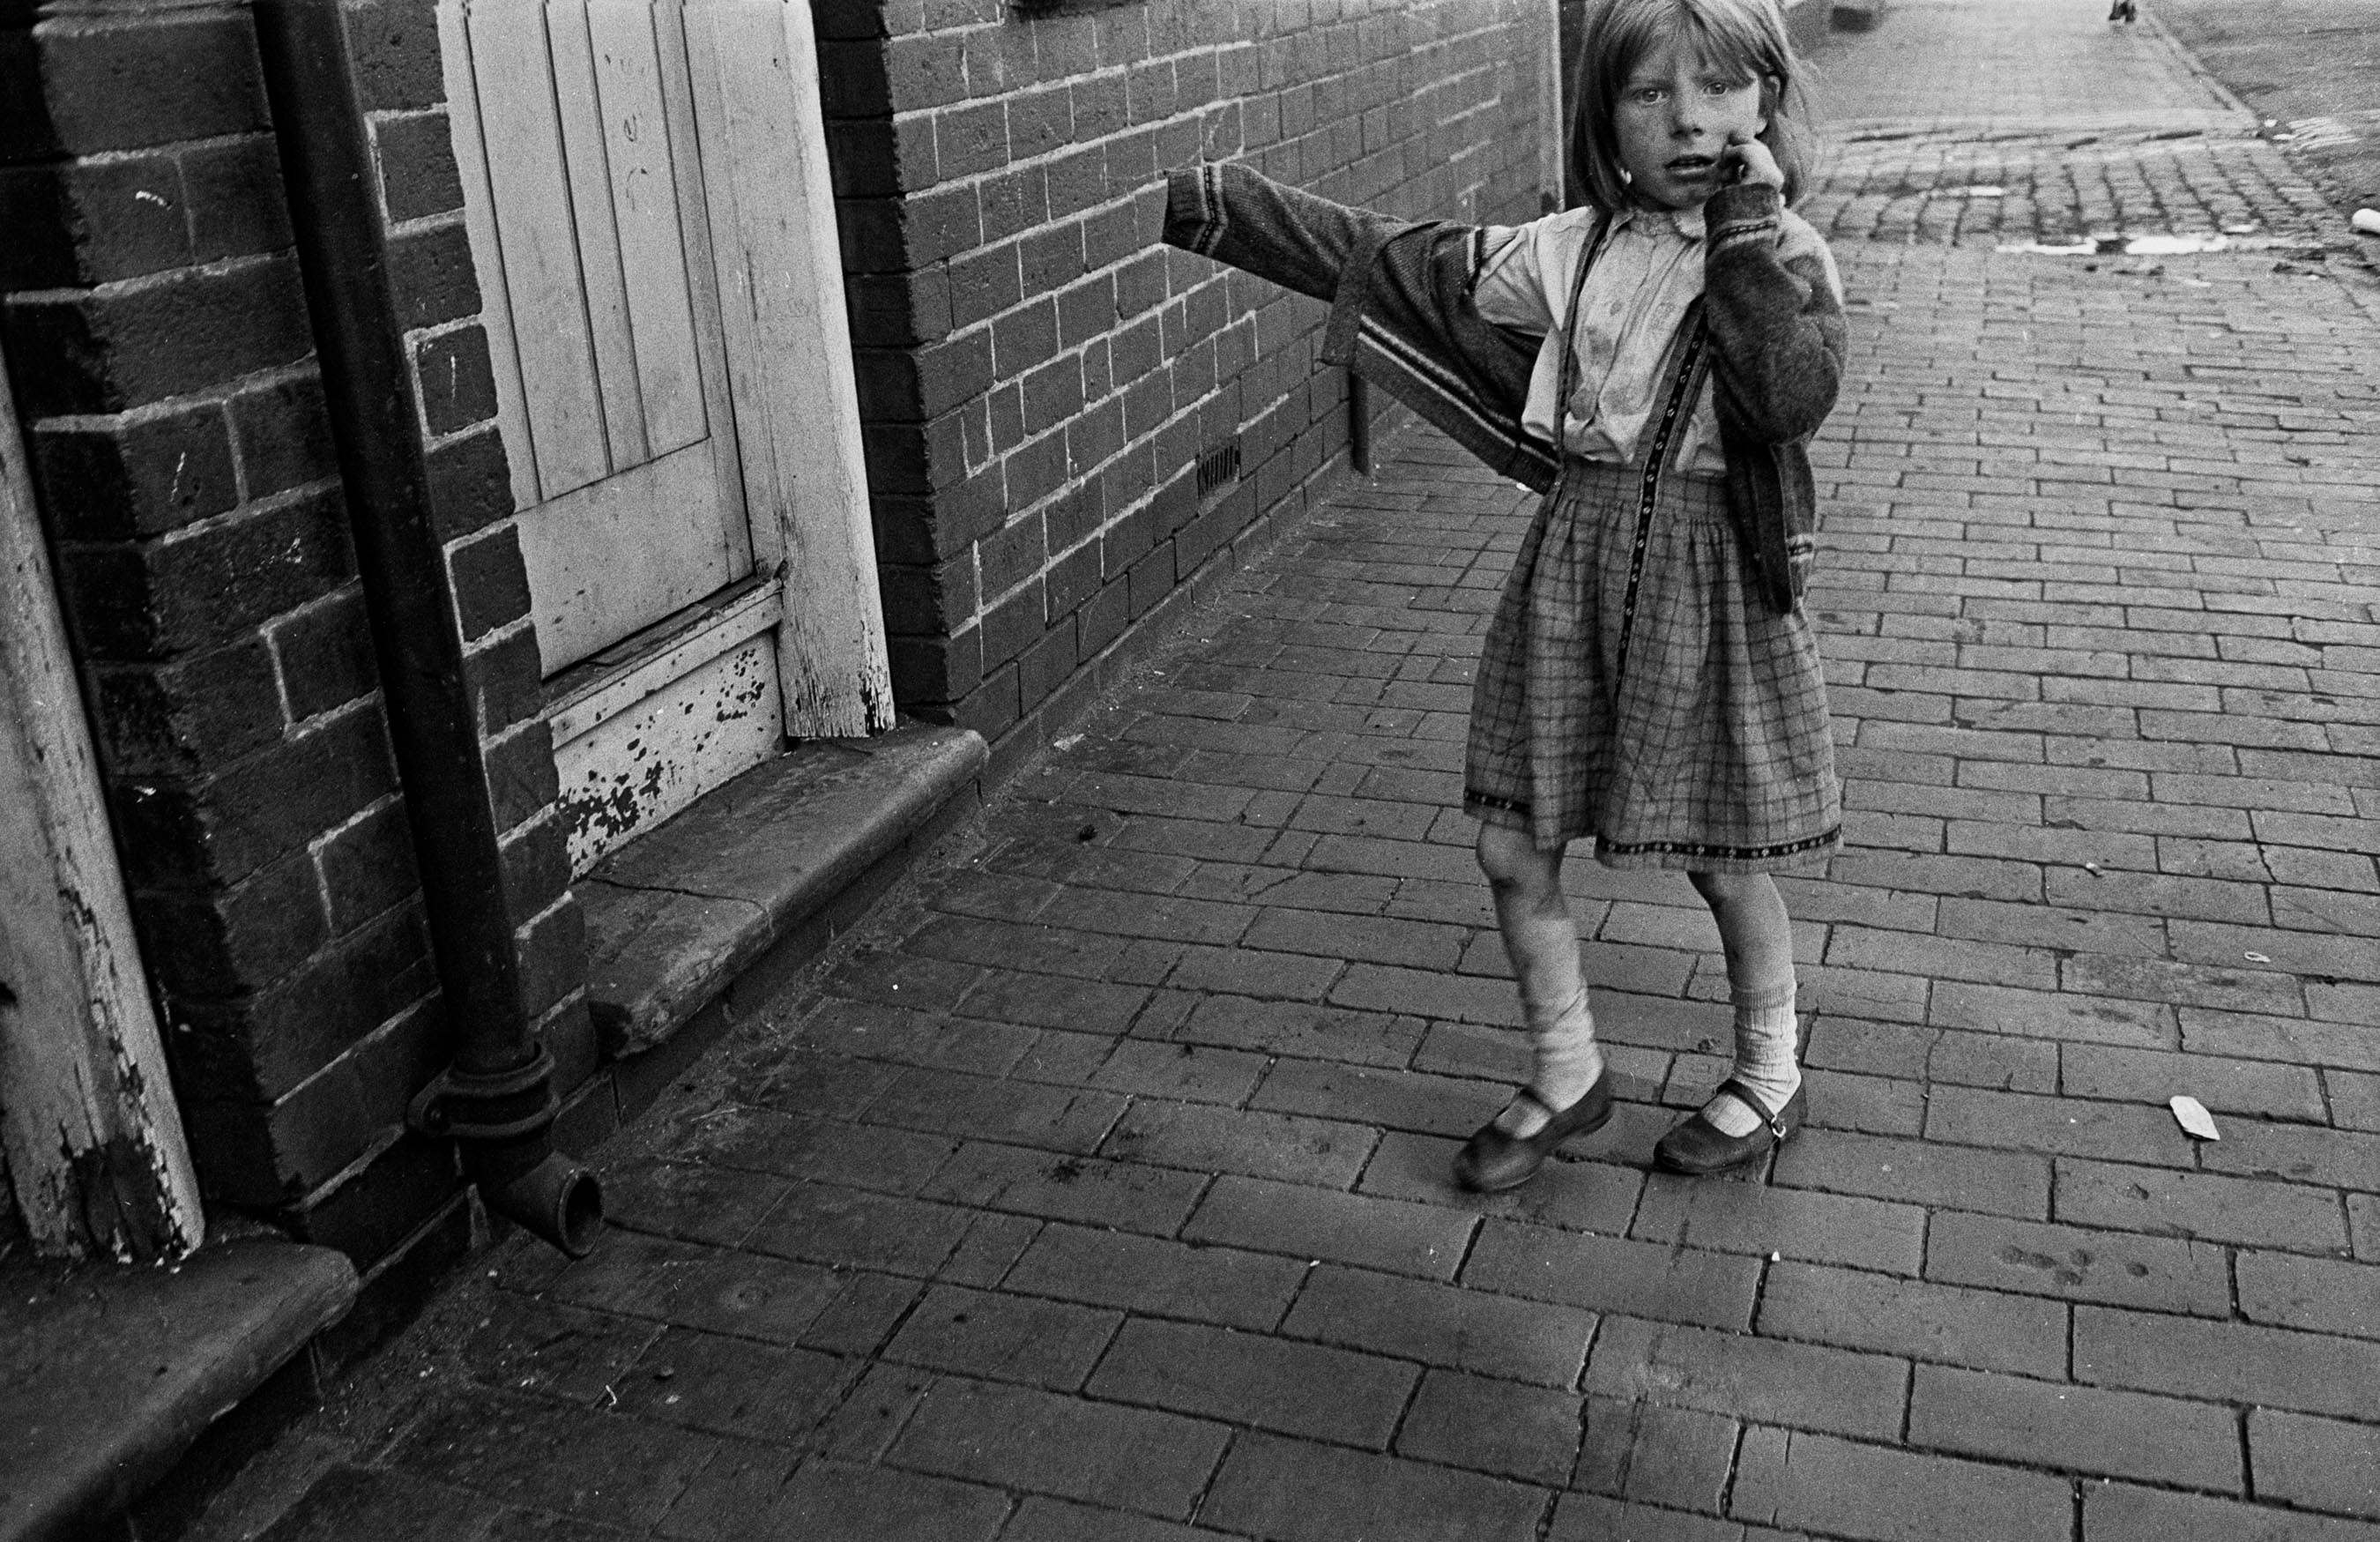 Photos Of Slum Life And Squalor In Birmingham 1969-72 (Volume 2) - Flashbak